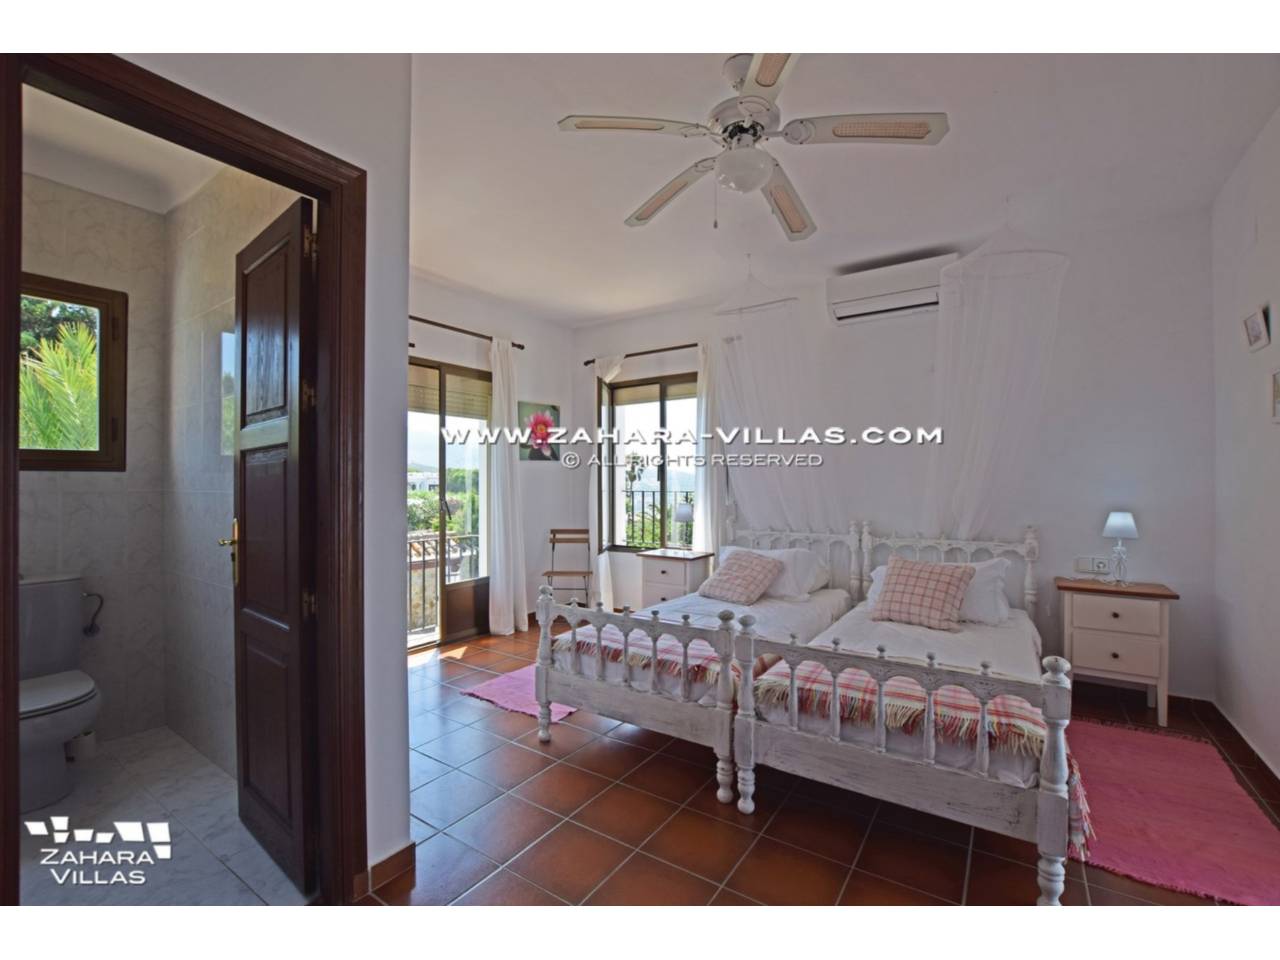 Imagen 9 de Wonderful Villa for sale in Atlanterra-Zahara de los Atunes